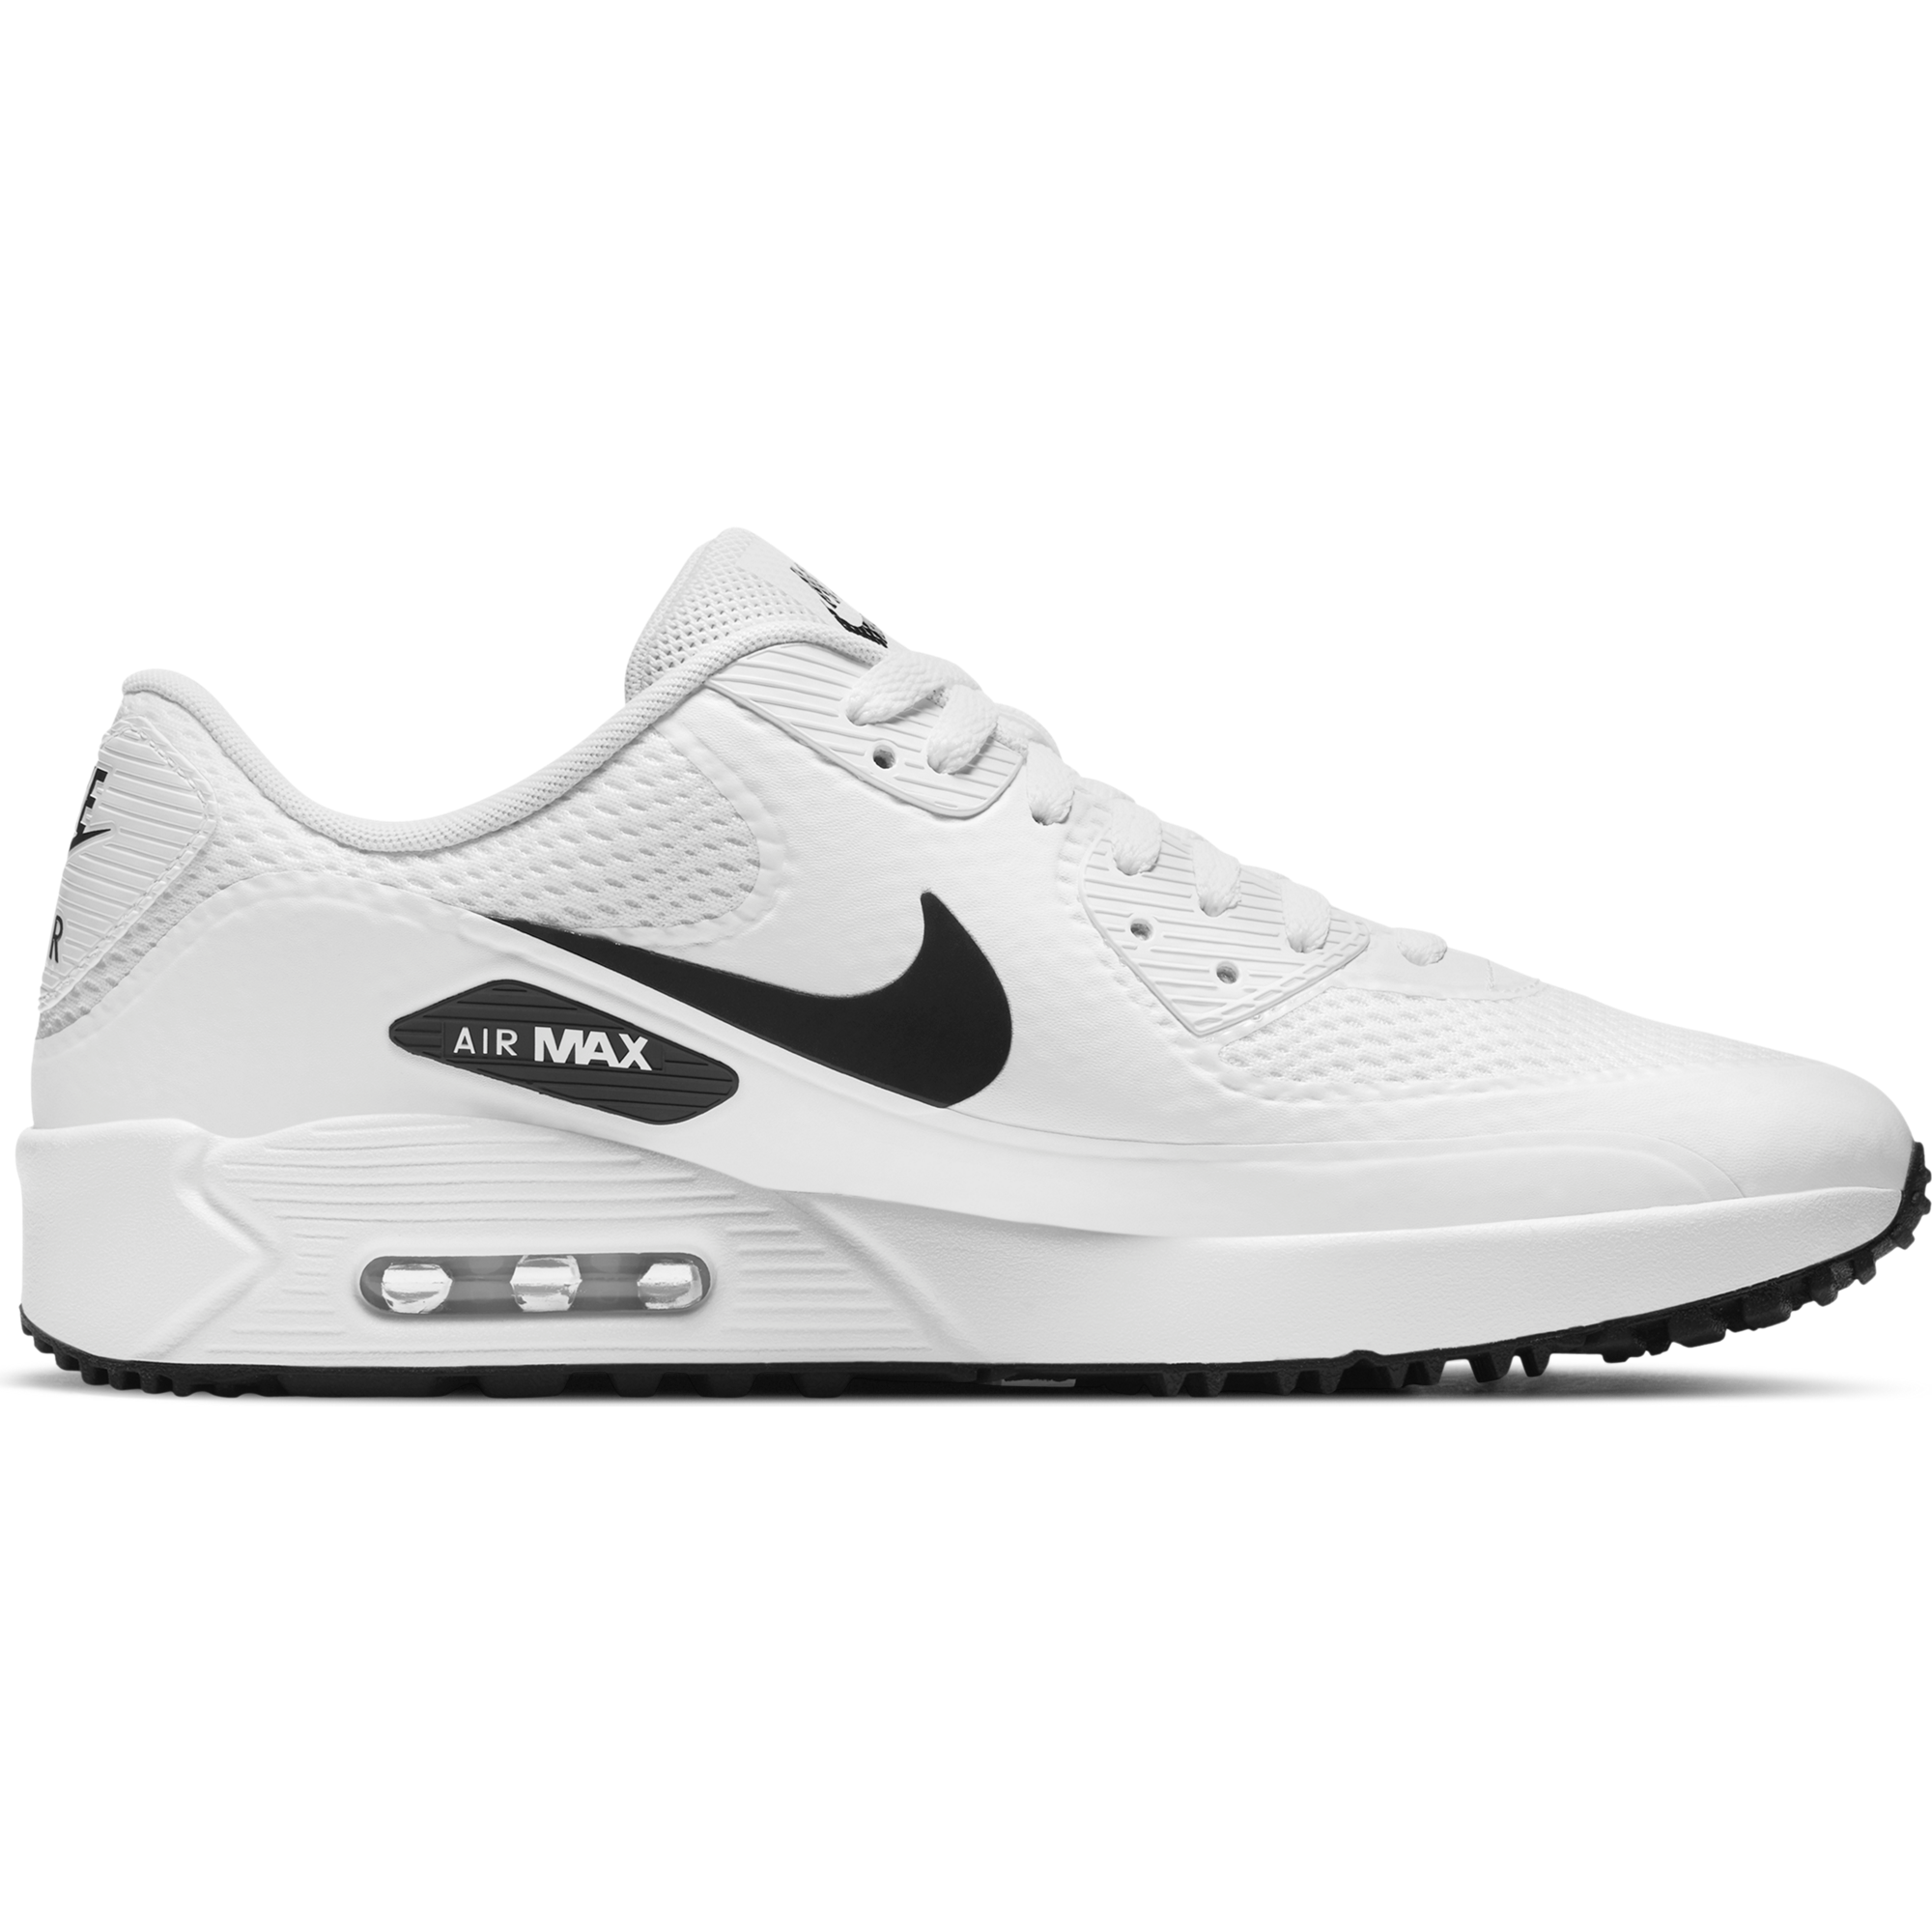 Nike AIR MAX 90 All White On Feet! 